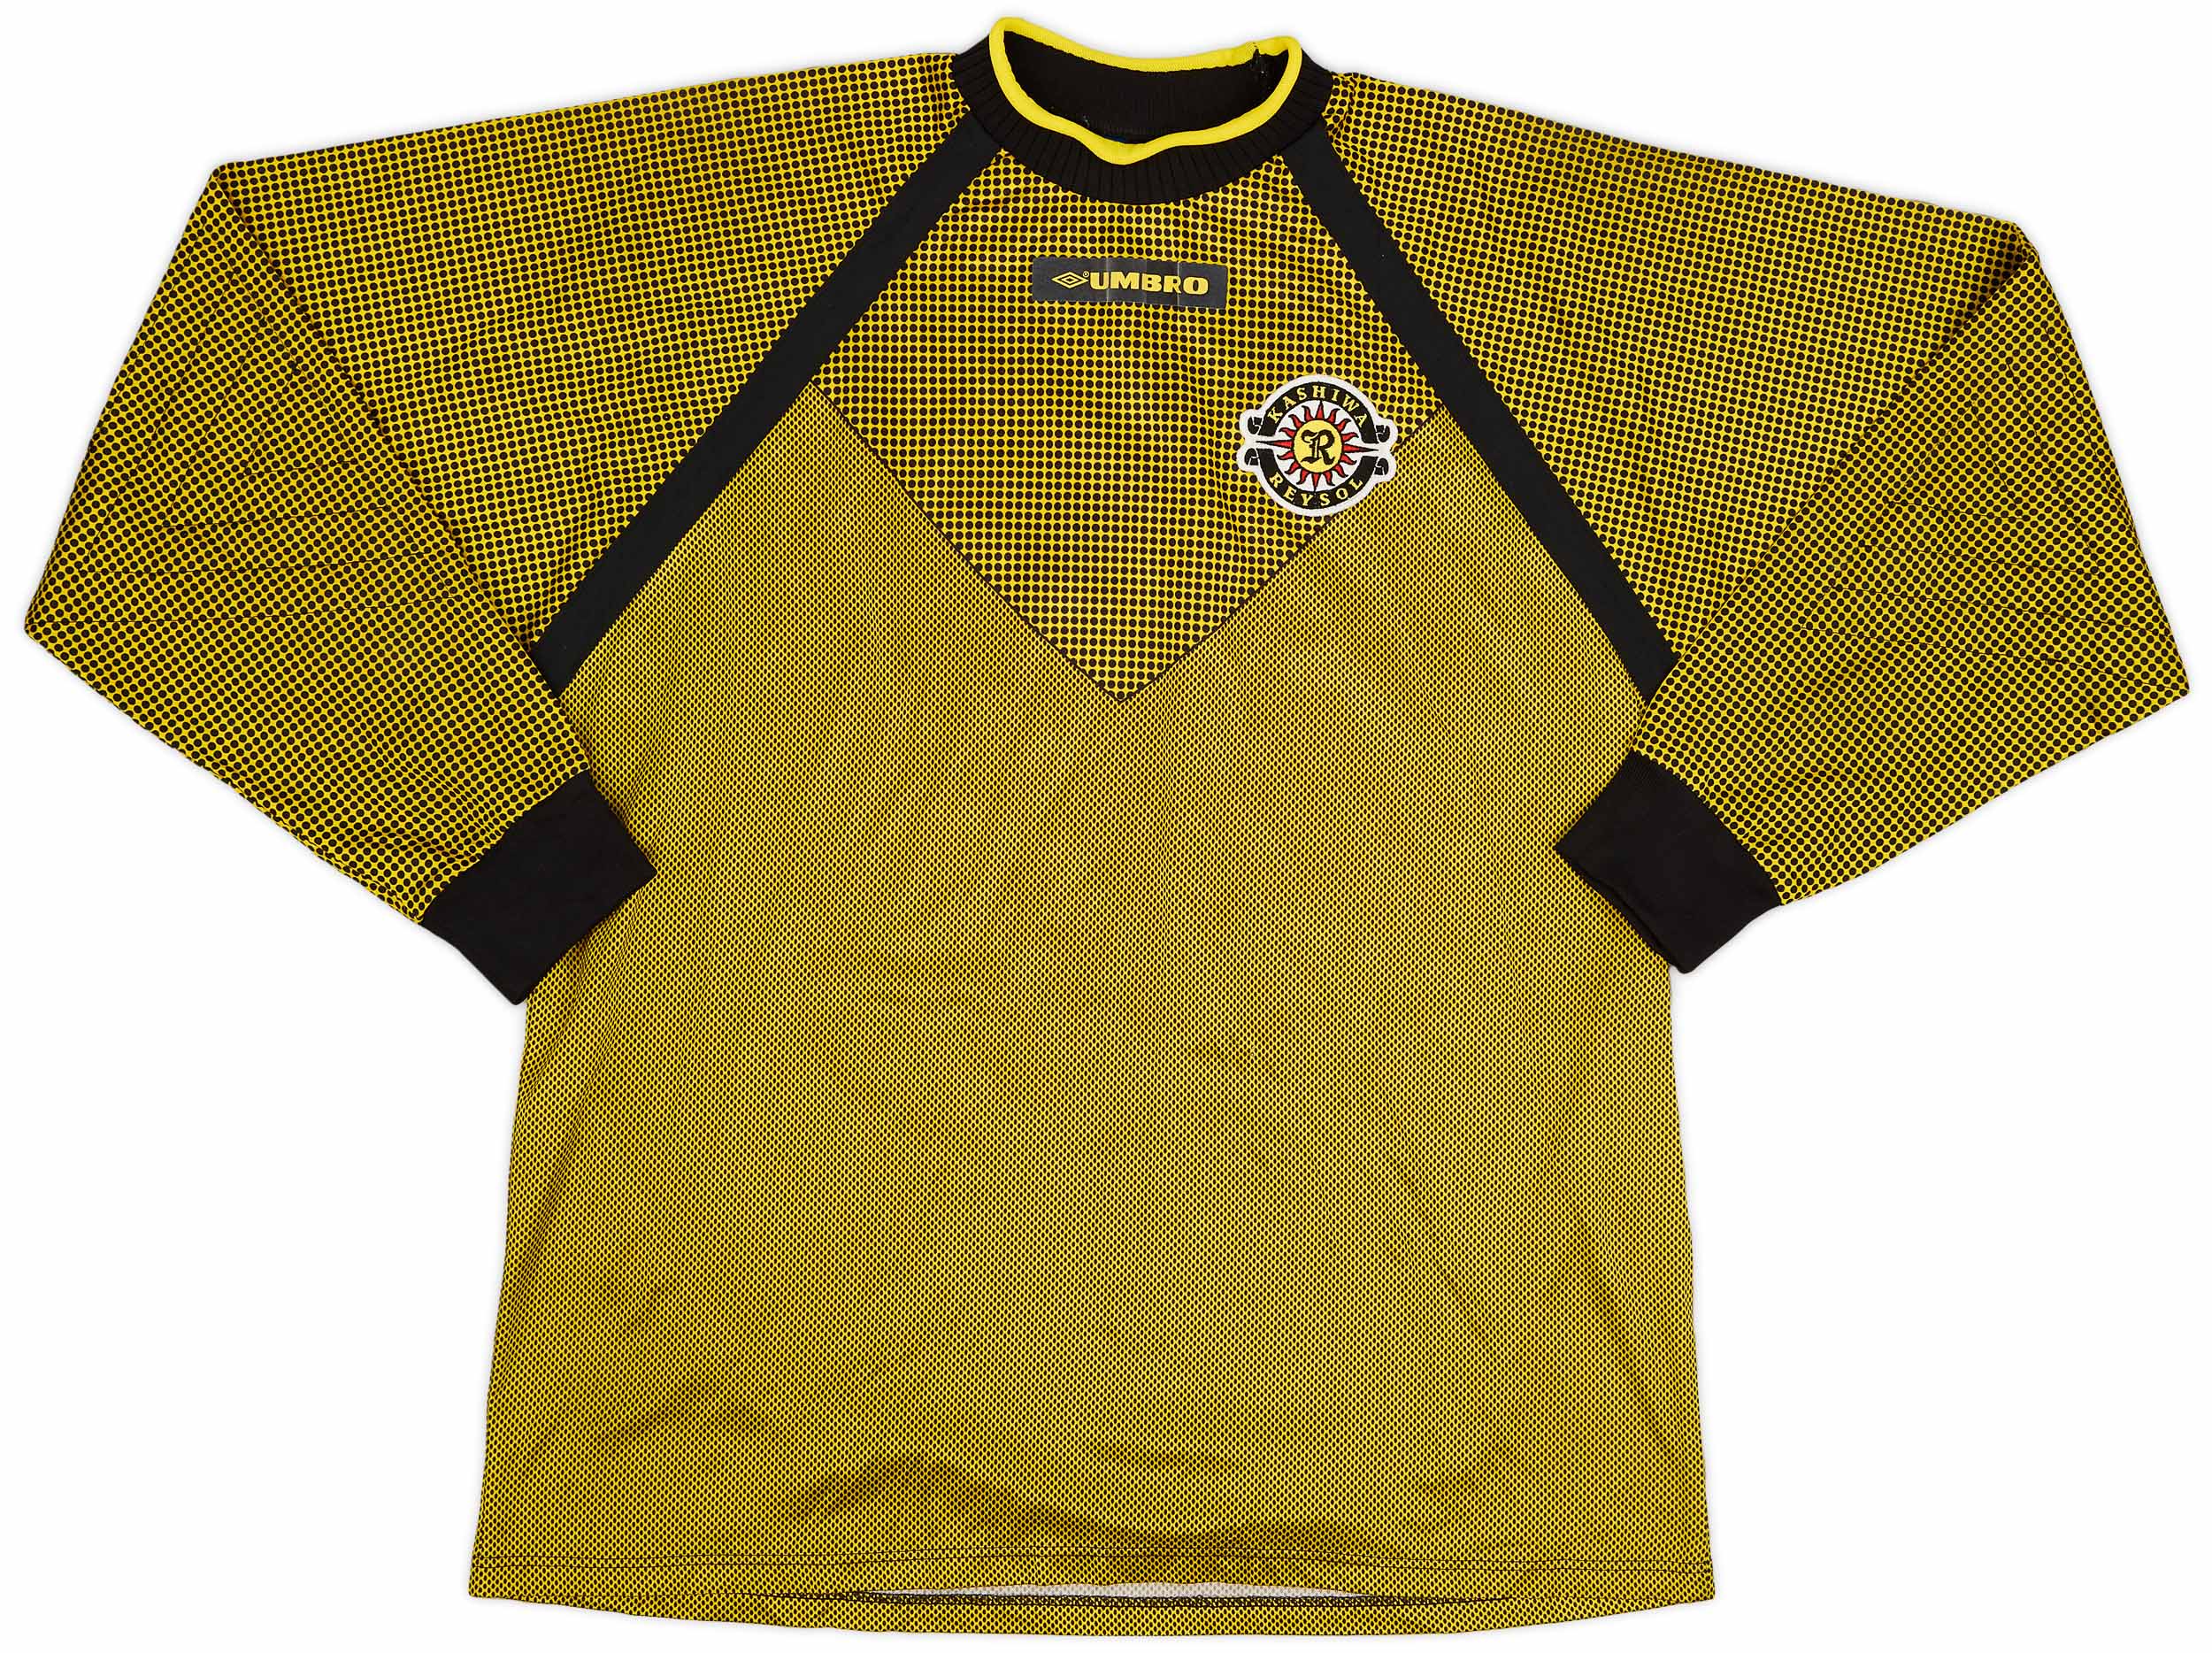 1997-98 Kashiwa Reysol GK Shirt - 9/10 - ()